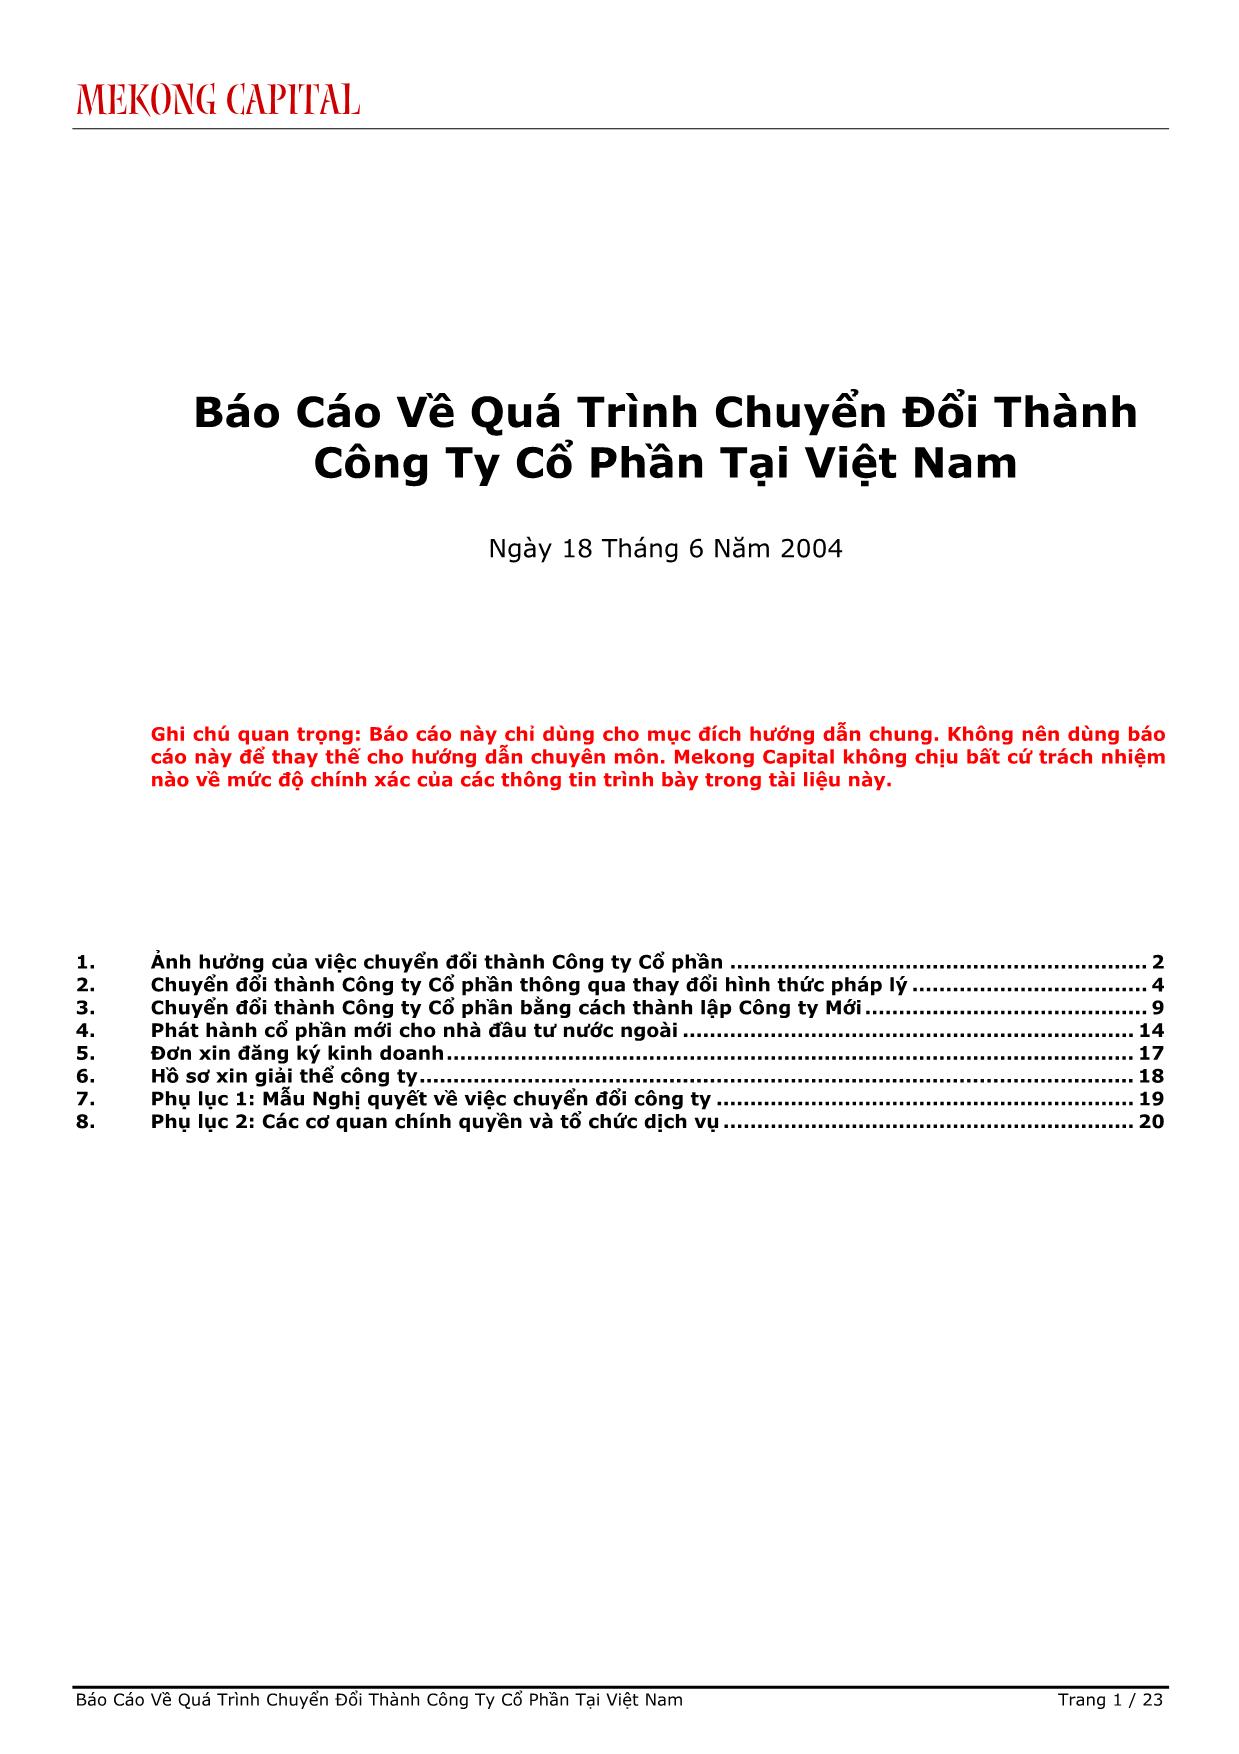 Báo cáo Về quá trình chuyển đổi thành công ty cổ phần tại Việt Nam trang 1